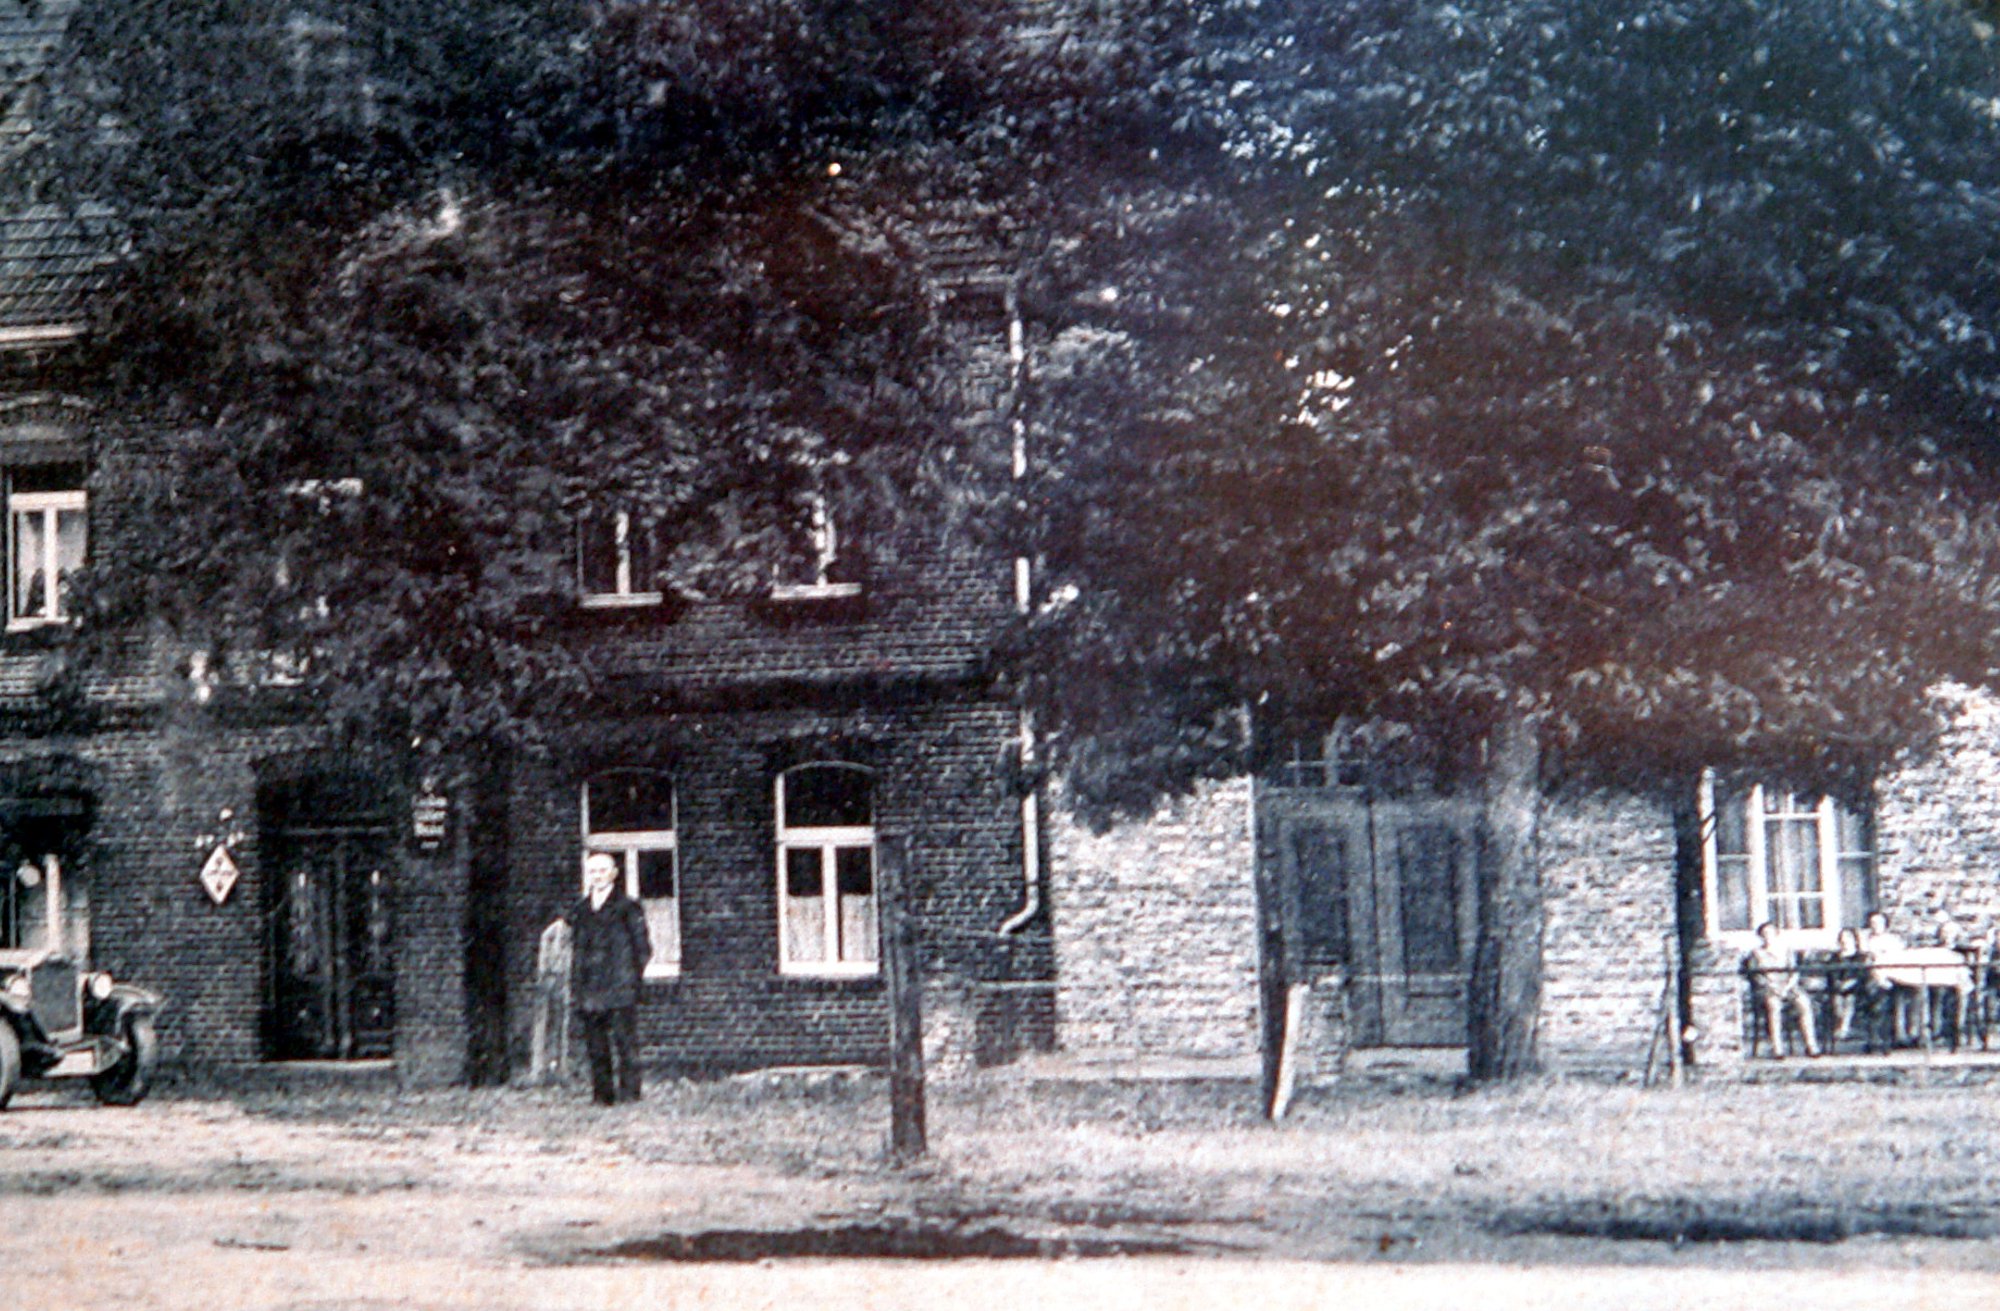 Landhaus Püttmann